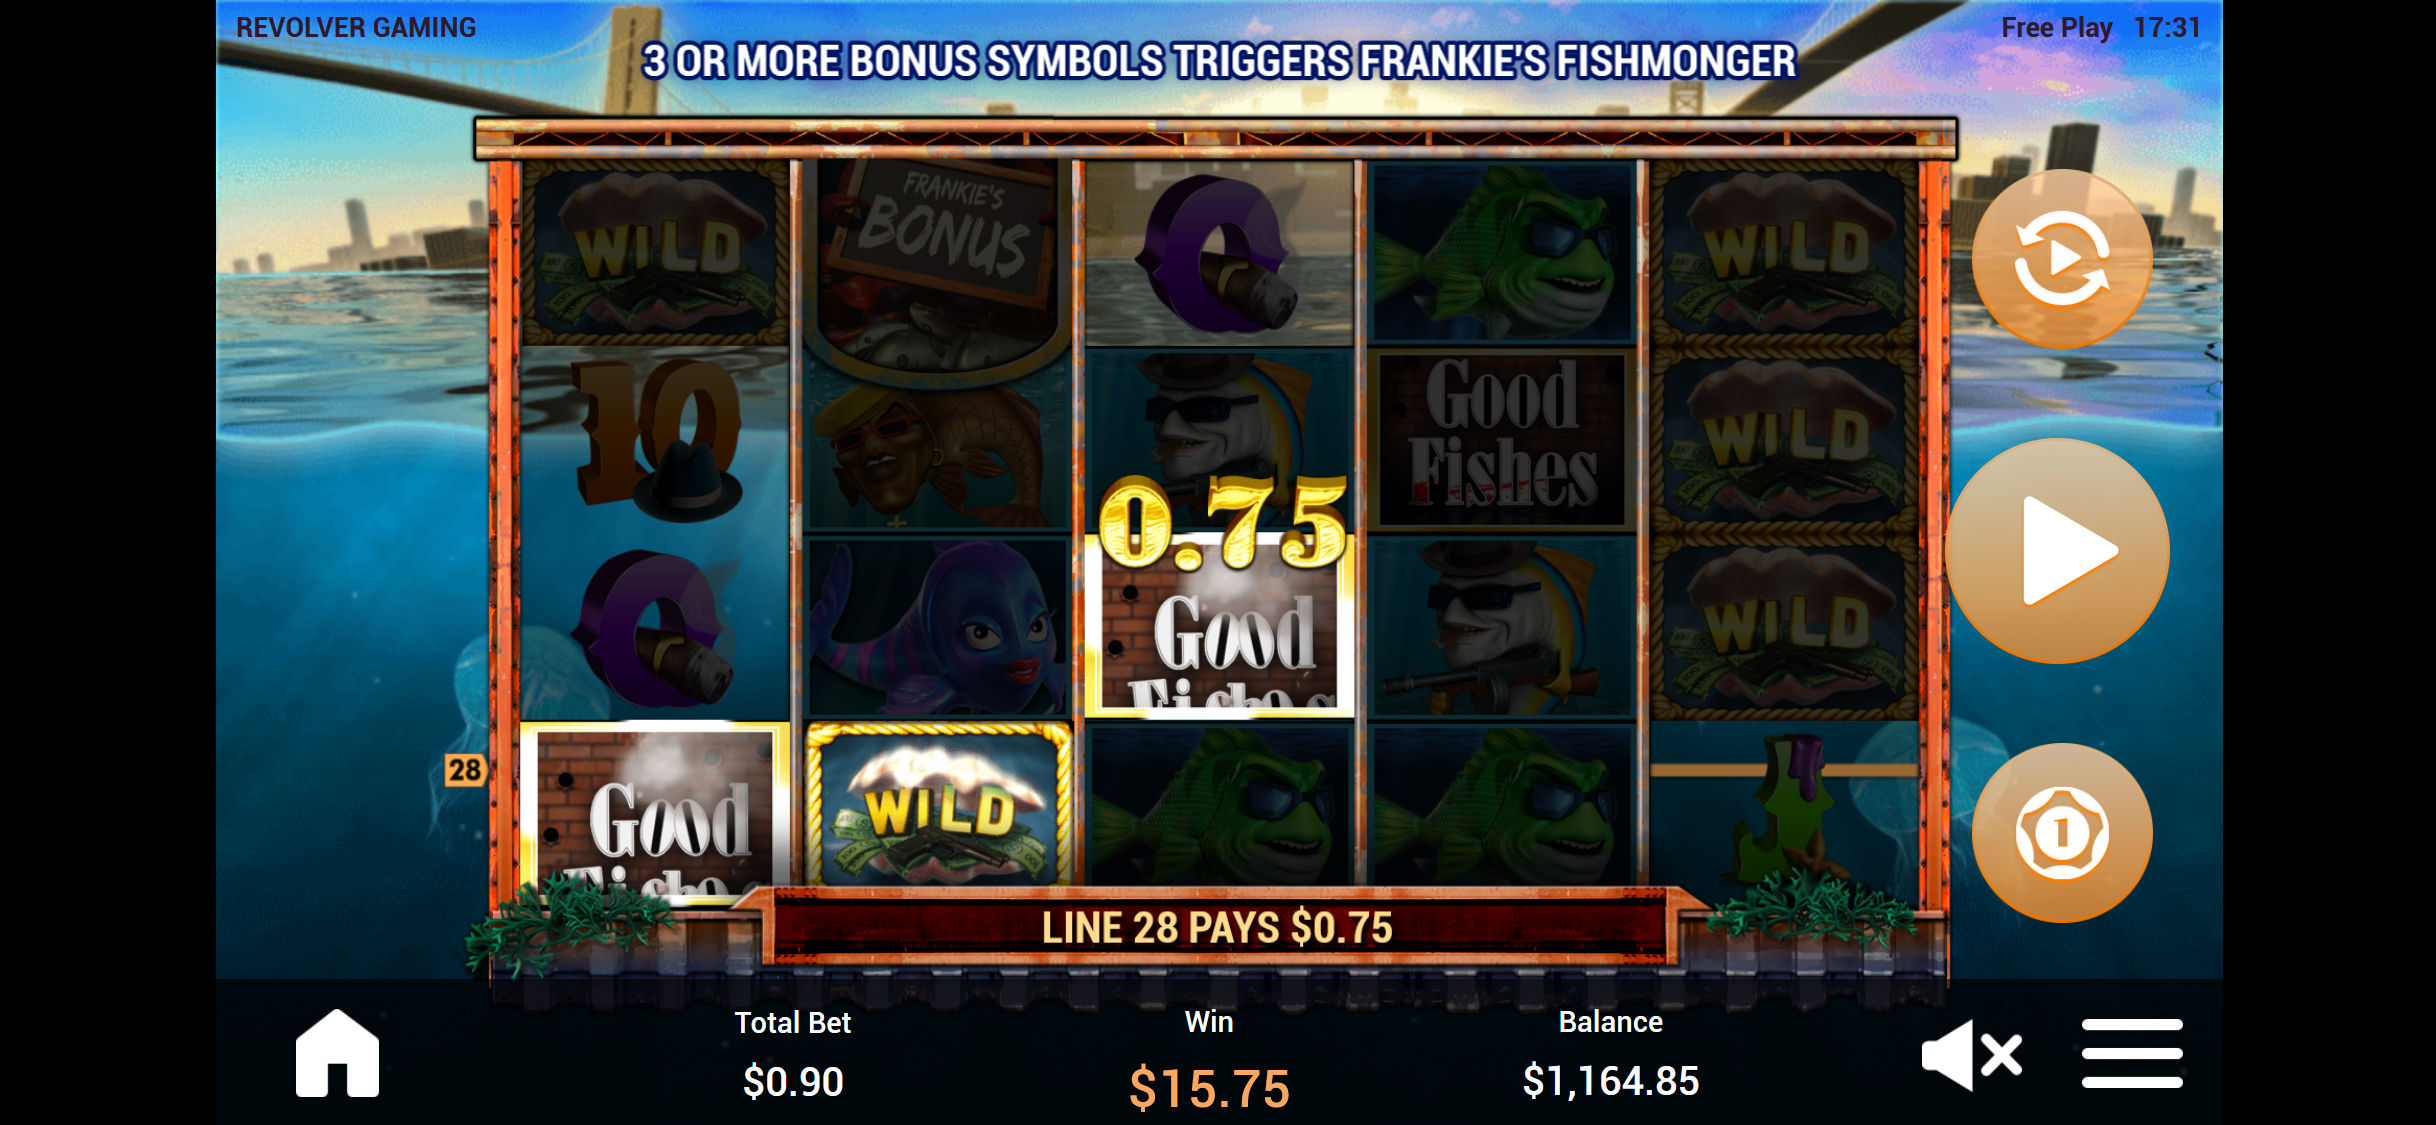 Dream Vegas Casino Mobile Slot Games Review